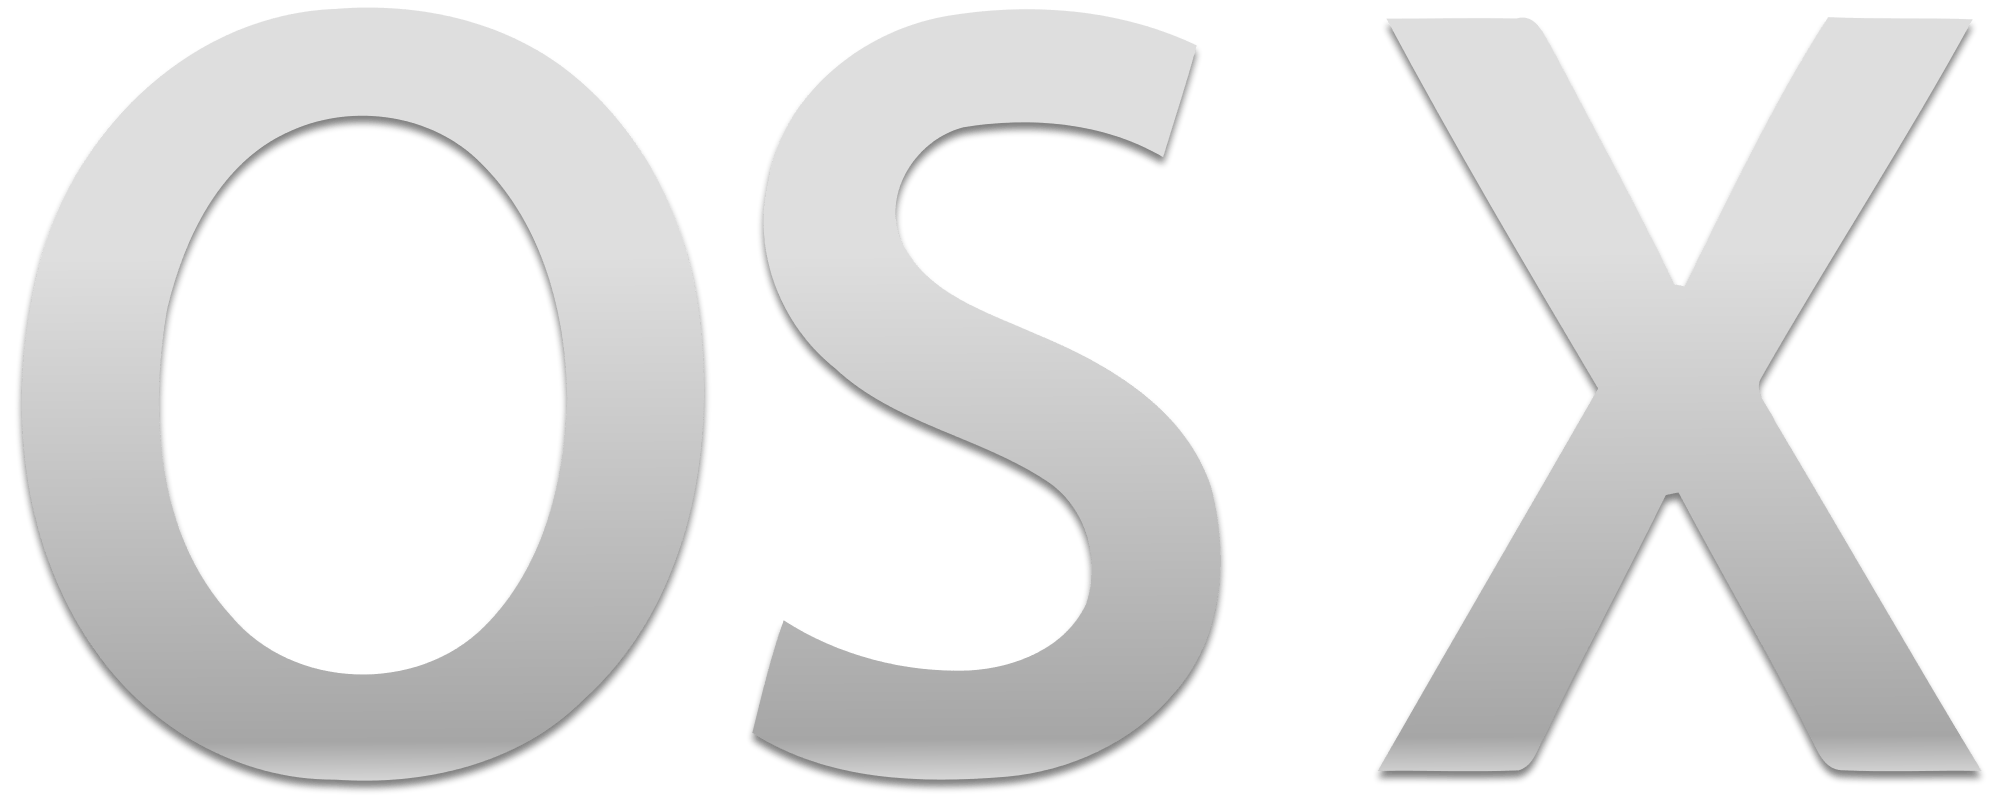 OS X Logo - The OS X Logo.svg